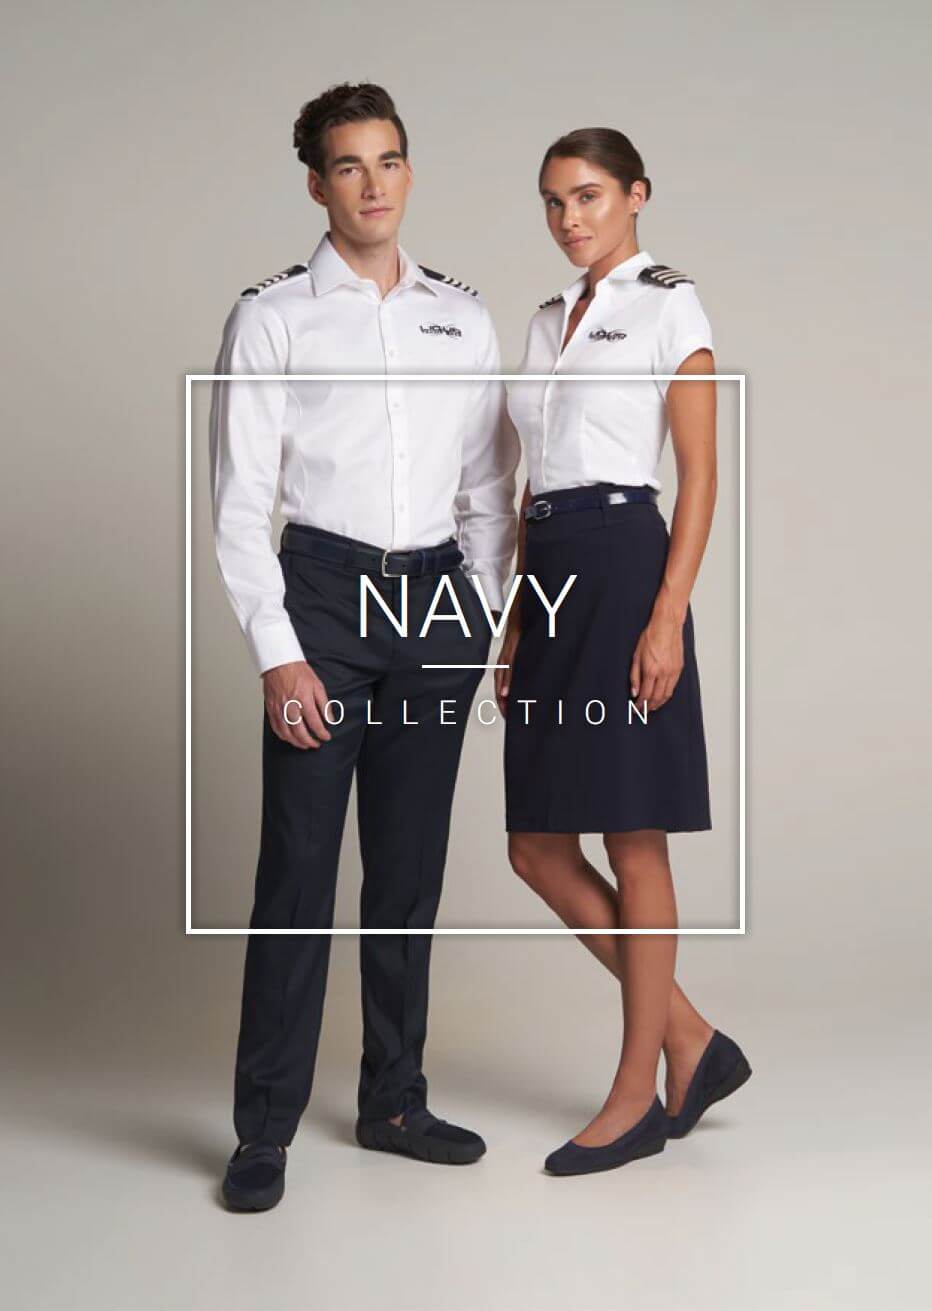 Gleichberechtigung Karu Krone yacht captain uniform wählen gebraucht ...